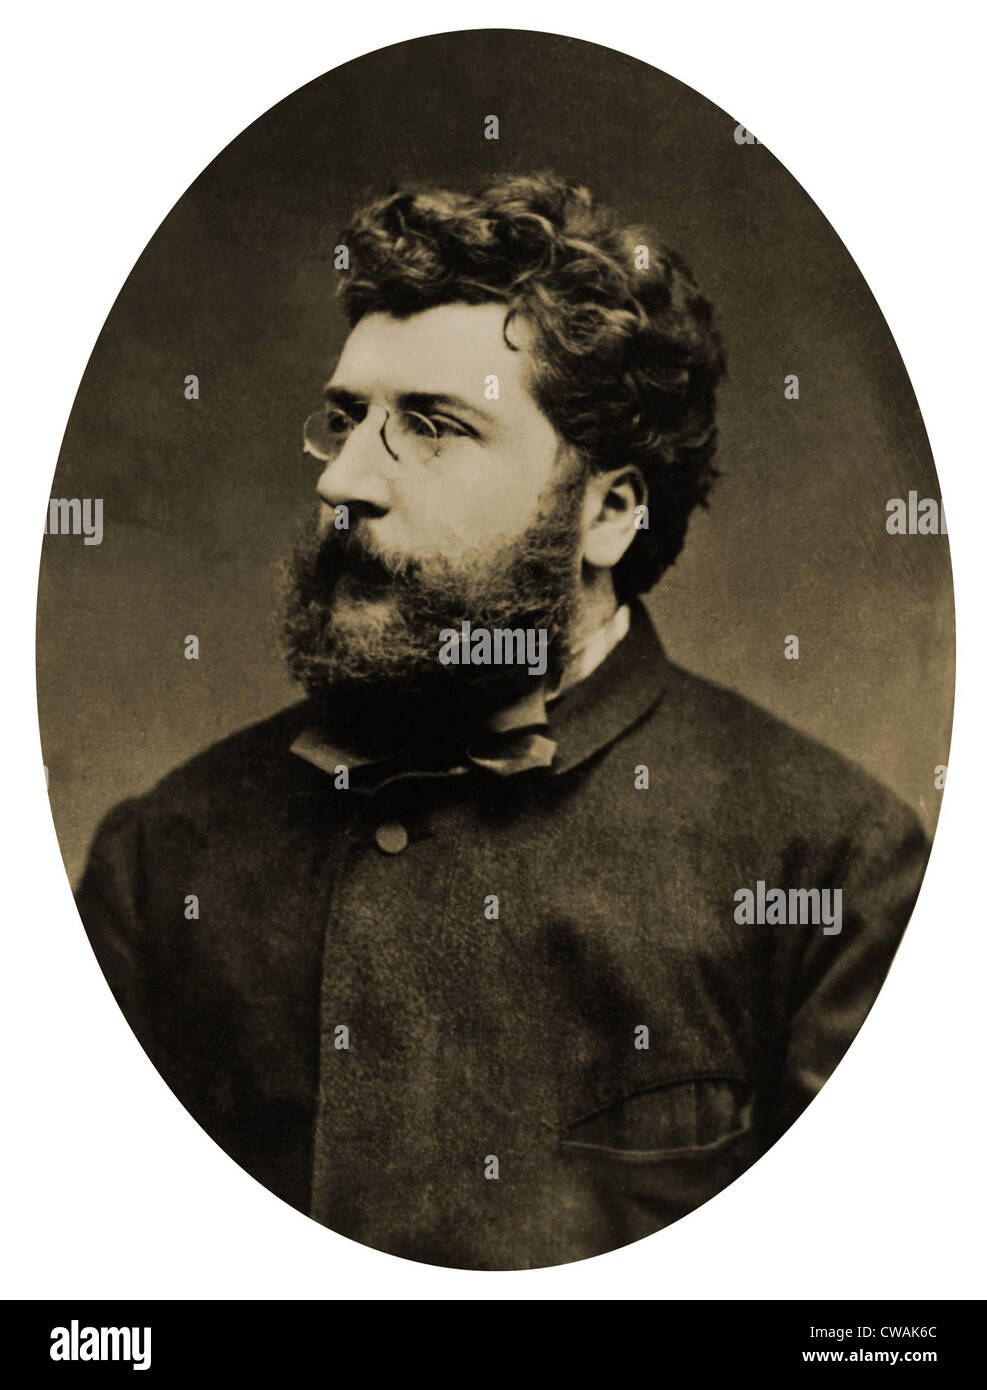 Georges Bizet (1838-1875), französischer Komponist aufgrund seiner berühmten Oper CARMEN (1875), auf einer Erzählung von der zeitgenössischen französischen Autor Stockfoto